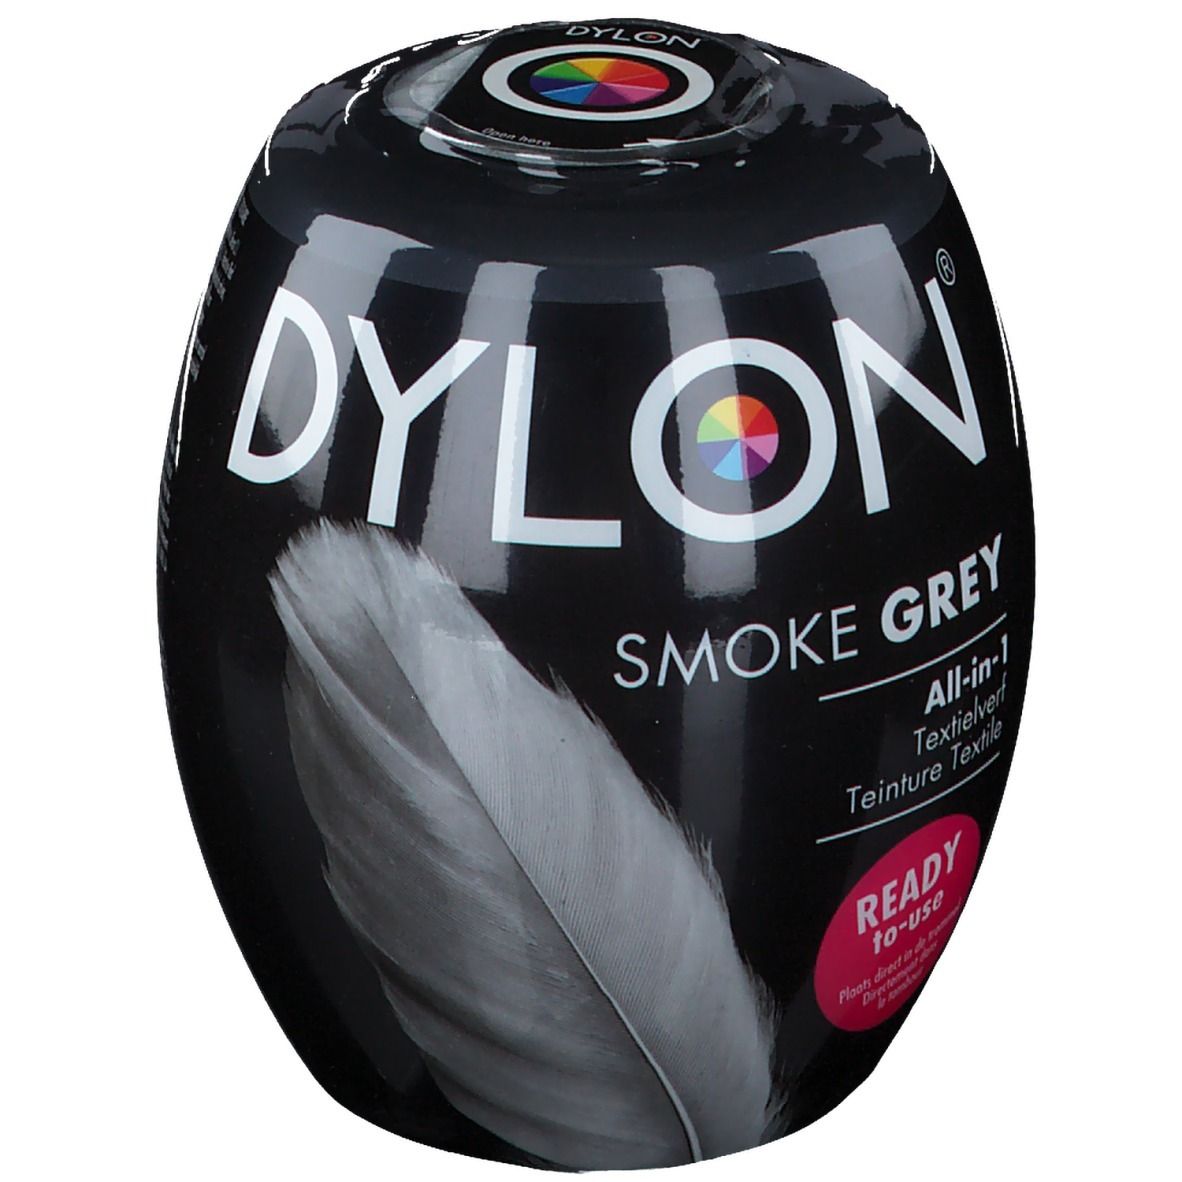 Dylon Smoke Grey All-in-1 Teinture Textile 65